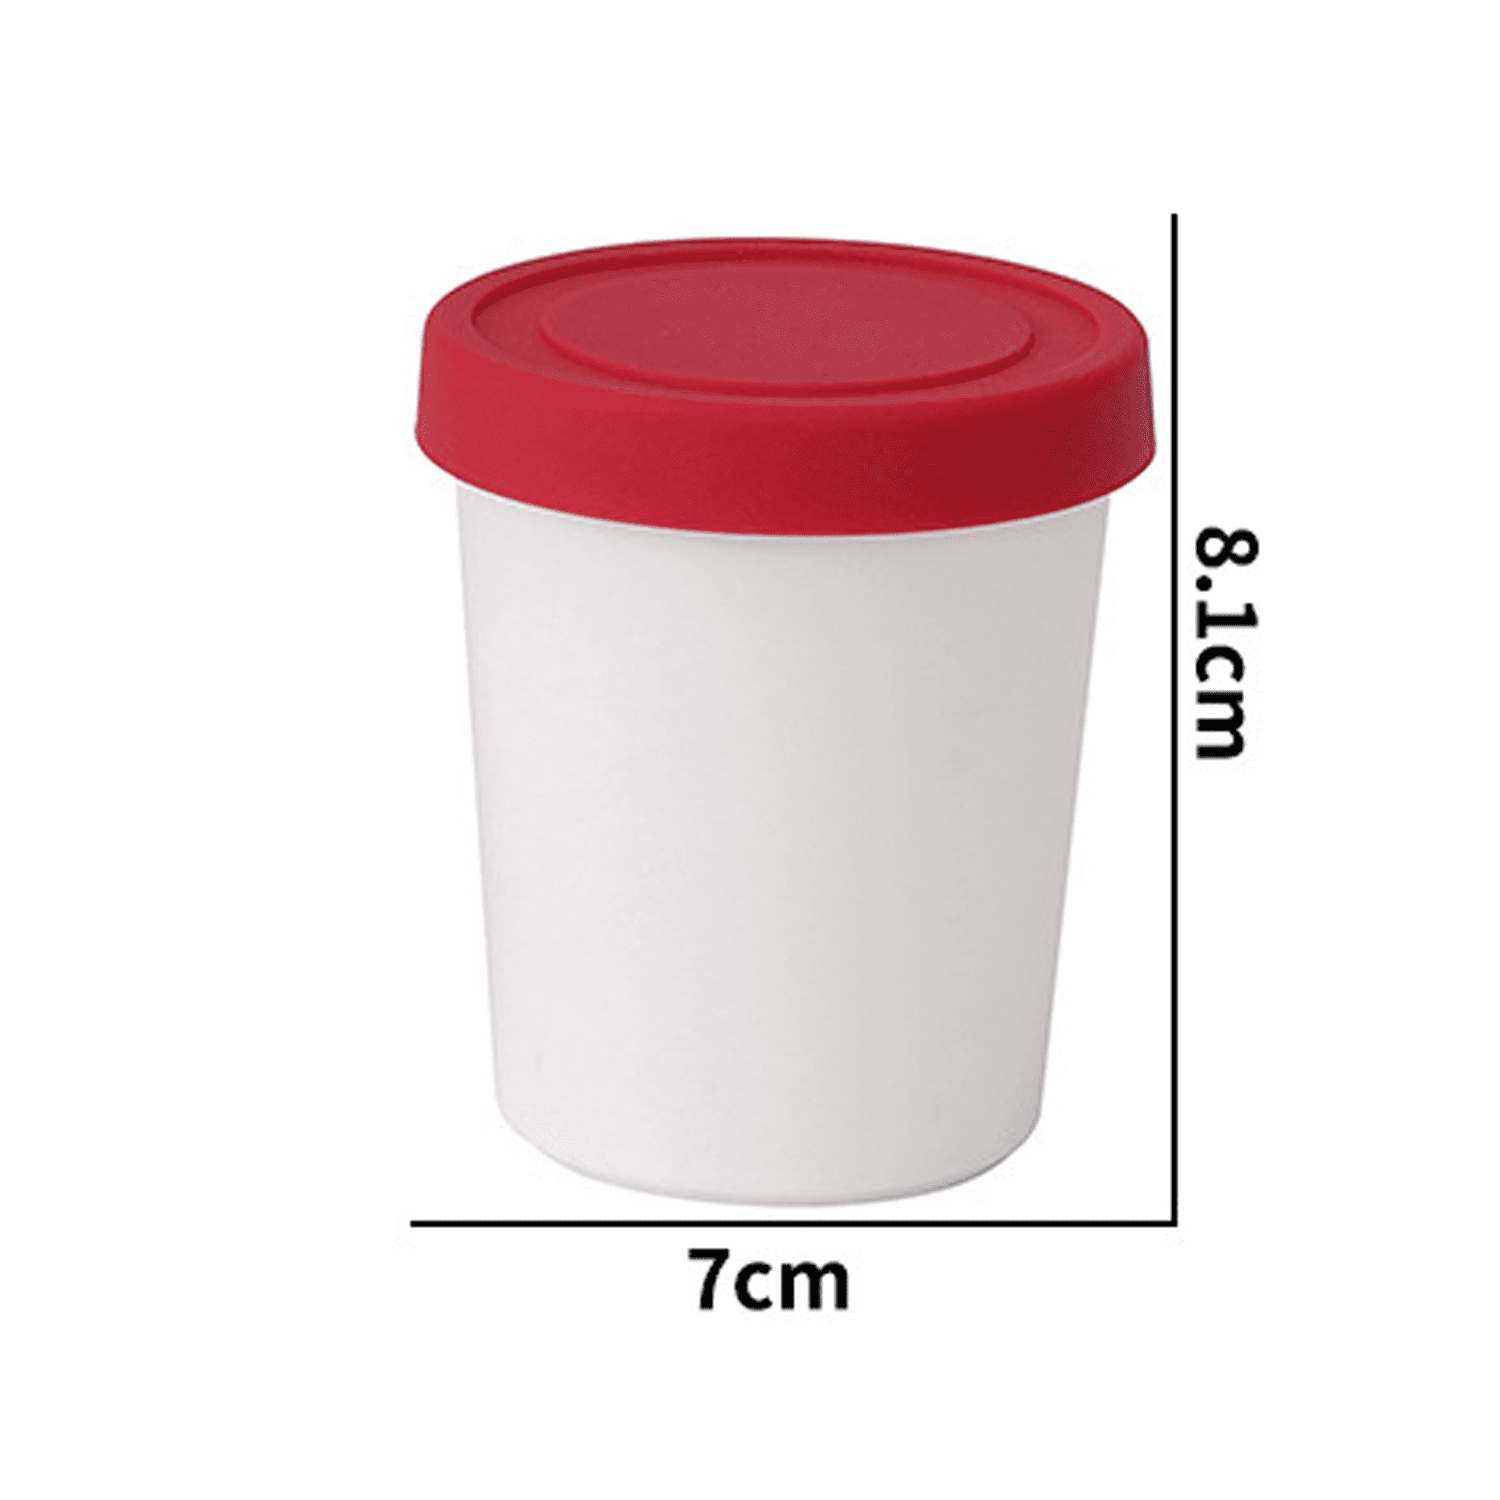 Icecream Storage Container – Zicoto